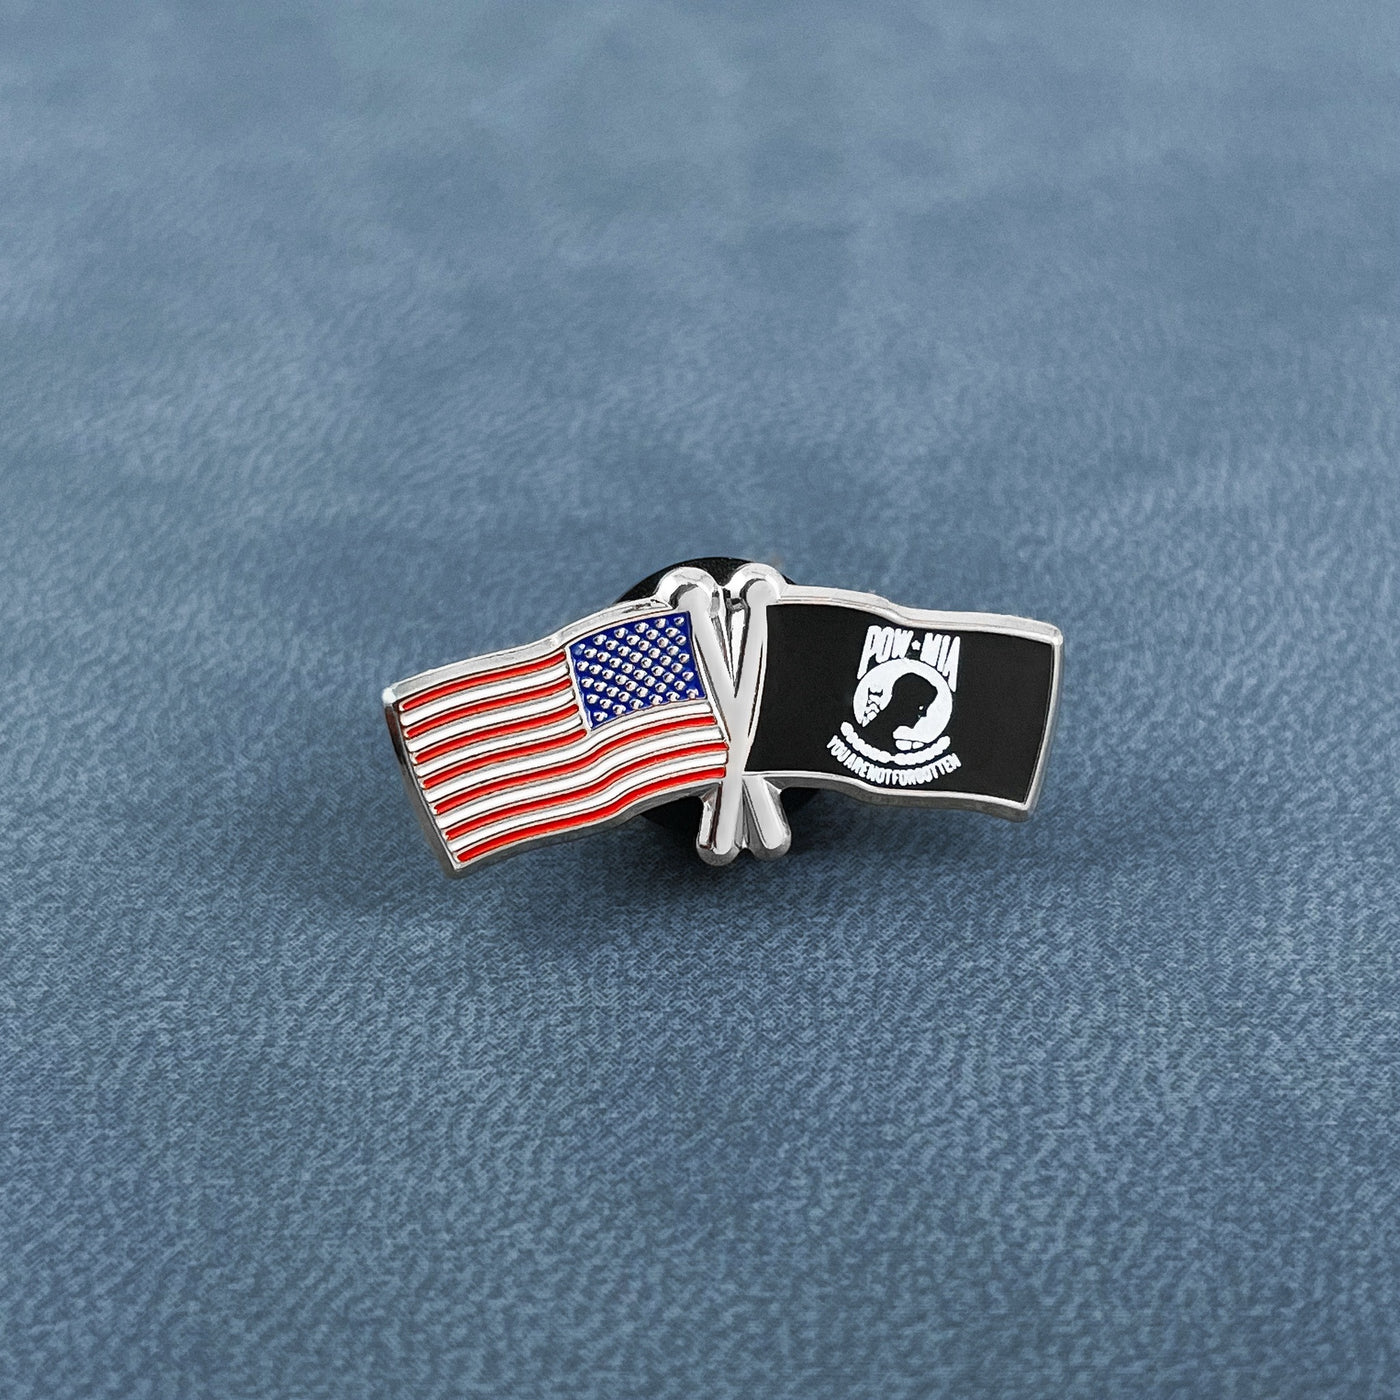 Silver USA POW MIA Flags Pin